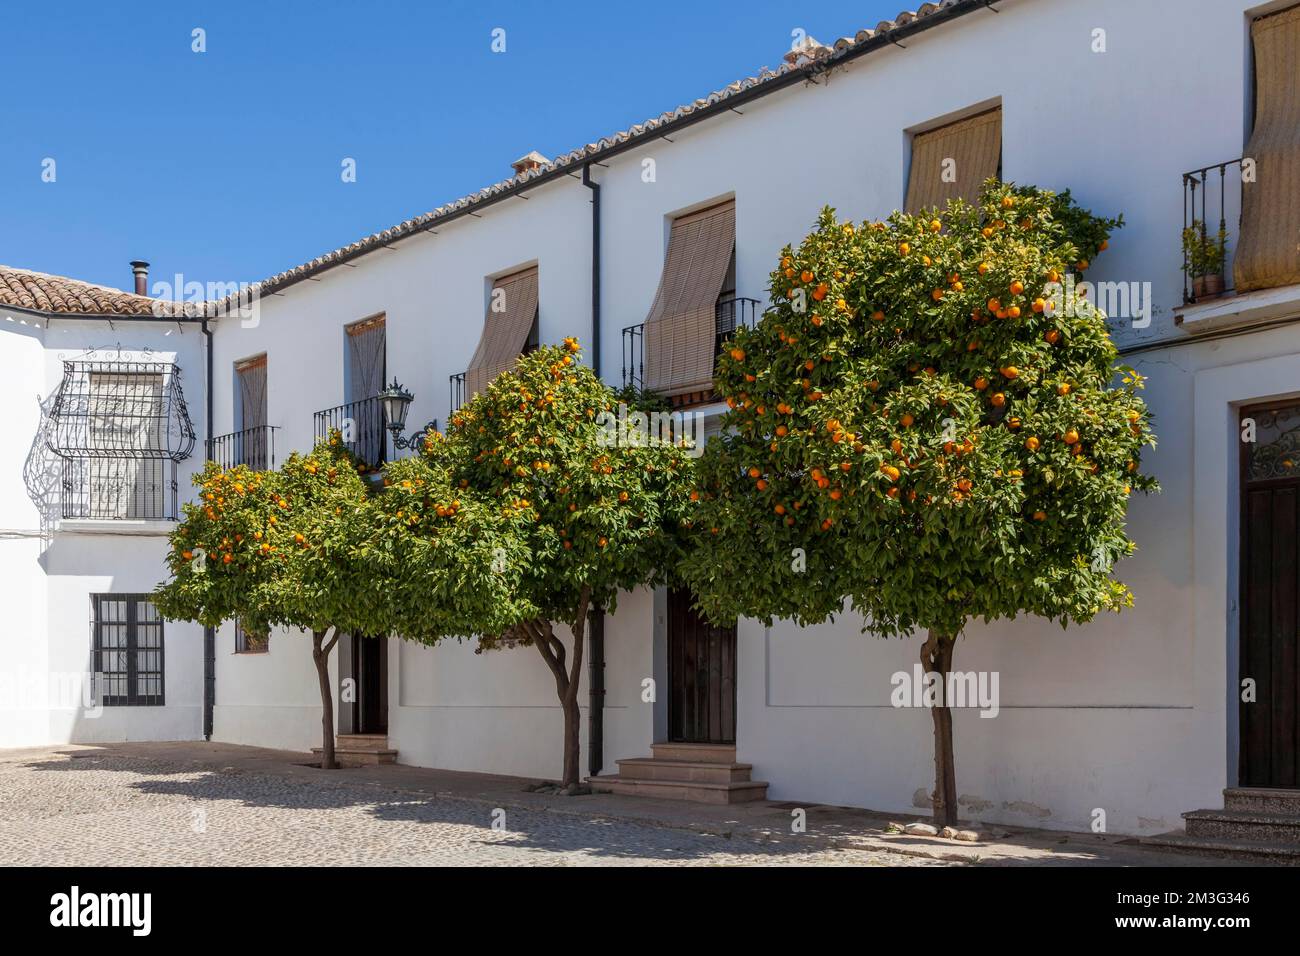 Pommern Bäume in der Altstadt von Ronda, Weißes Dorf, Provinz Malaga, Andalusien, Spanien Stockfoto